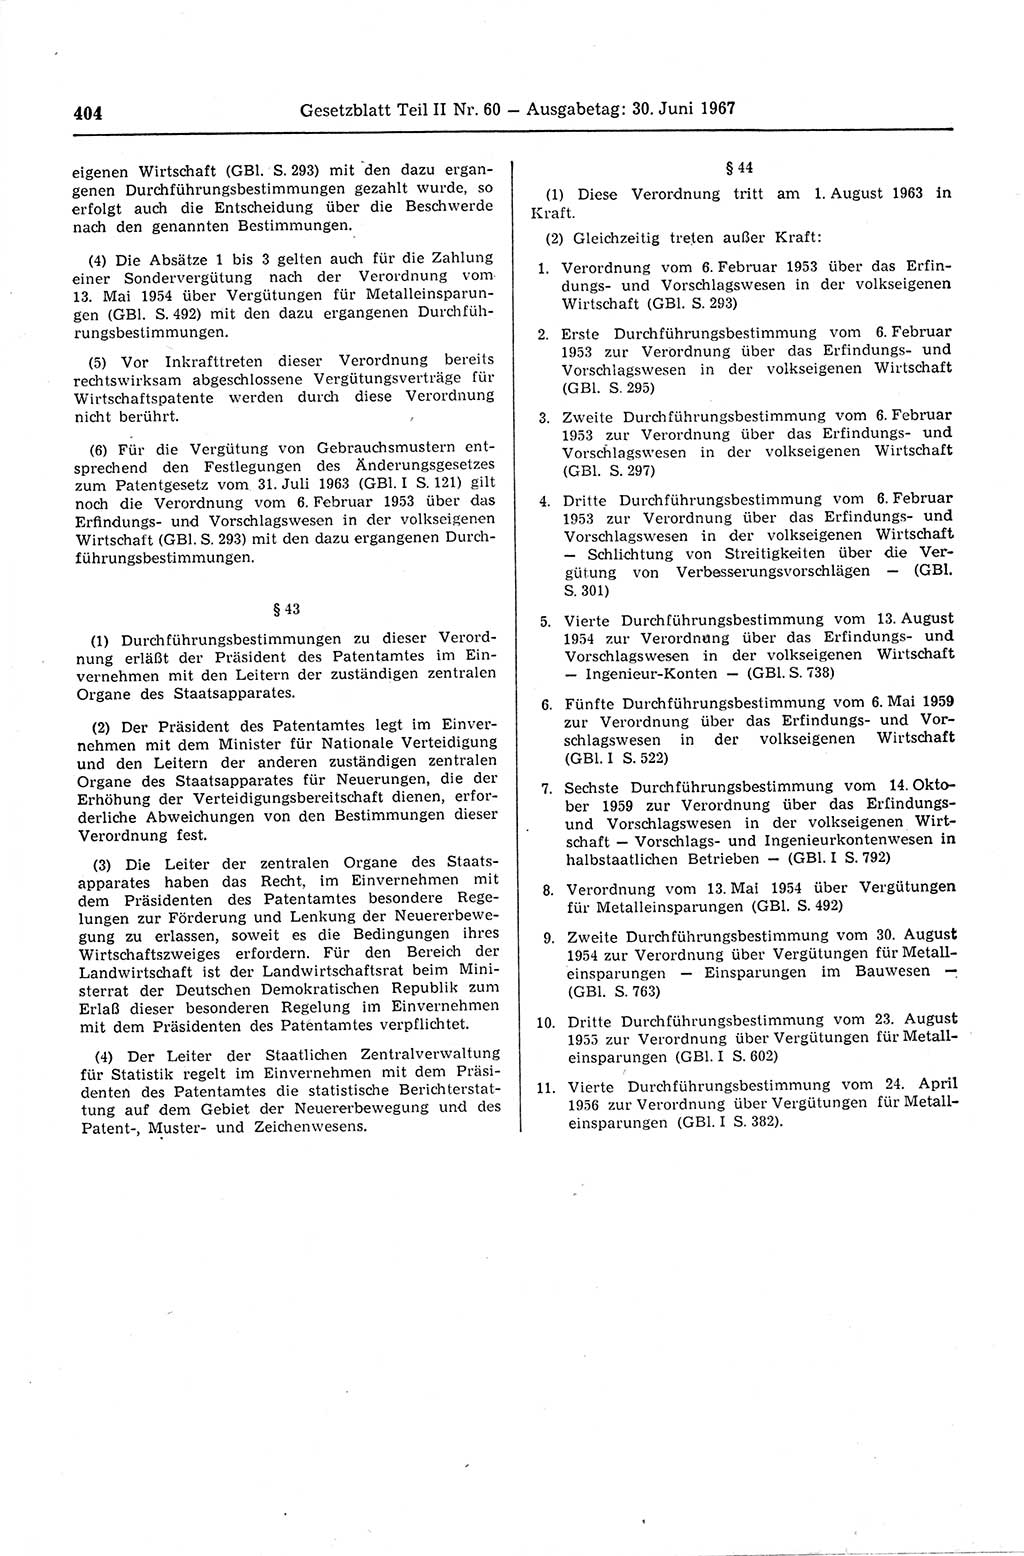 Gesetzblatt (GBl.) der Deutschen Demokratischen Republik (DDR) Teil ⅠⅠ 1967, Seite 404 (GBl. DDR ⅠⅠ 1967, S. 404)